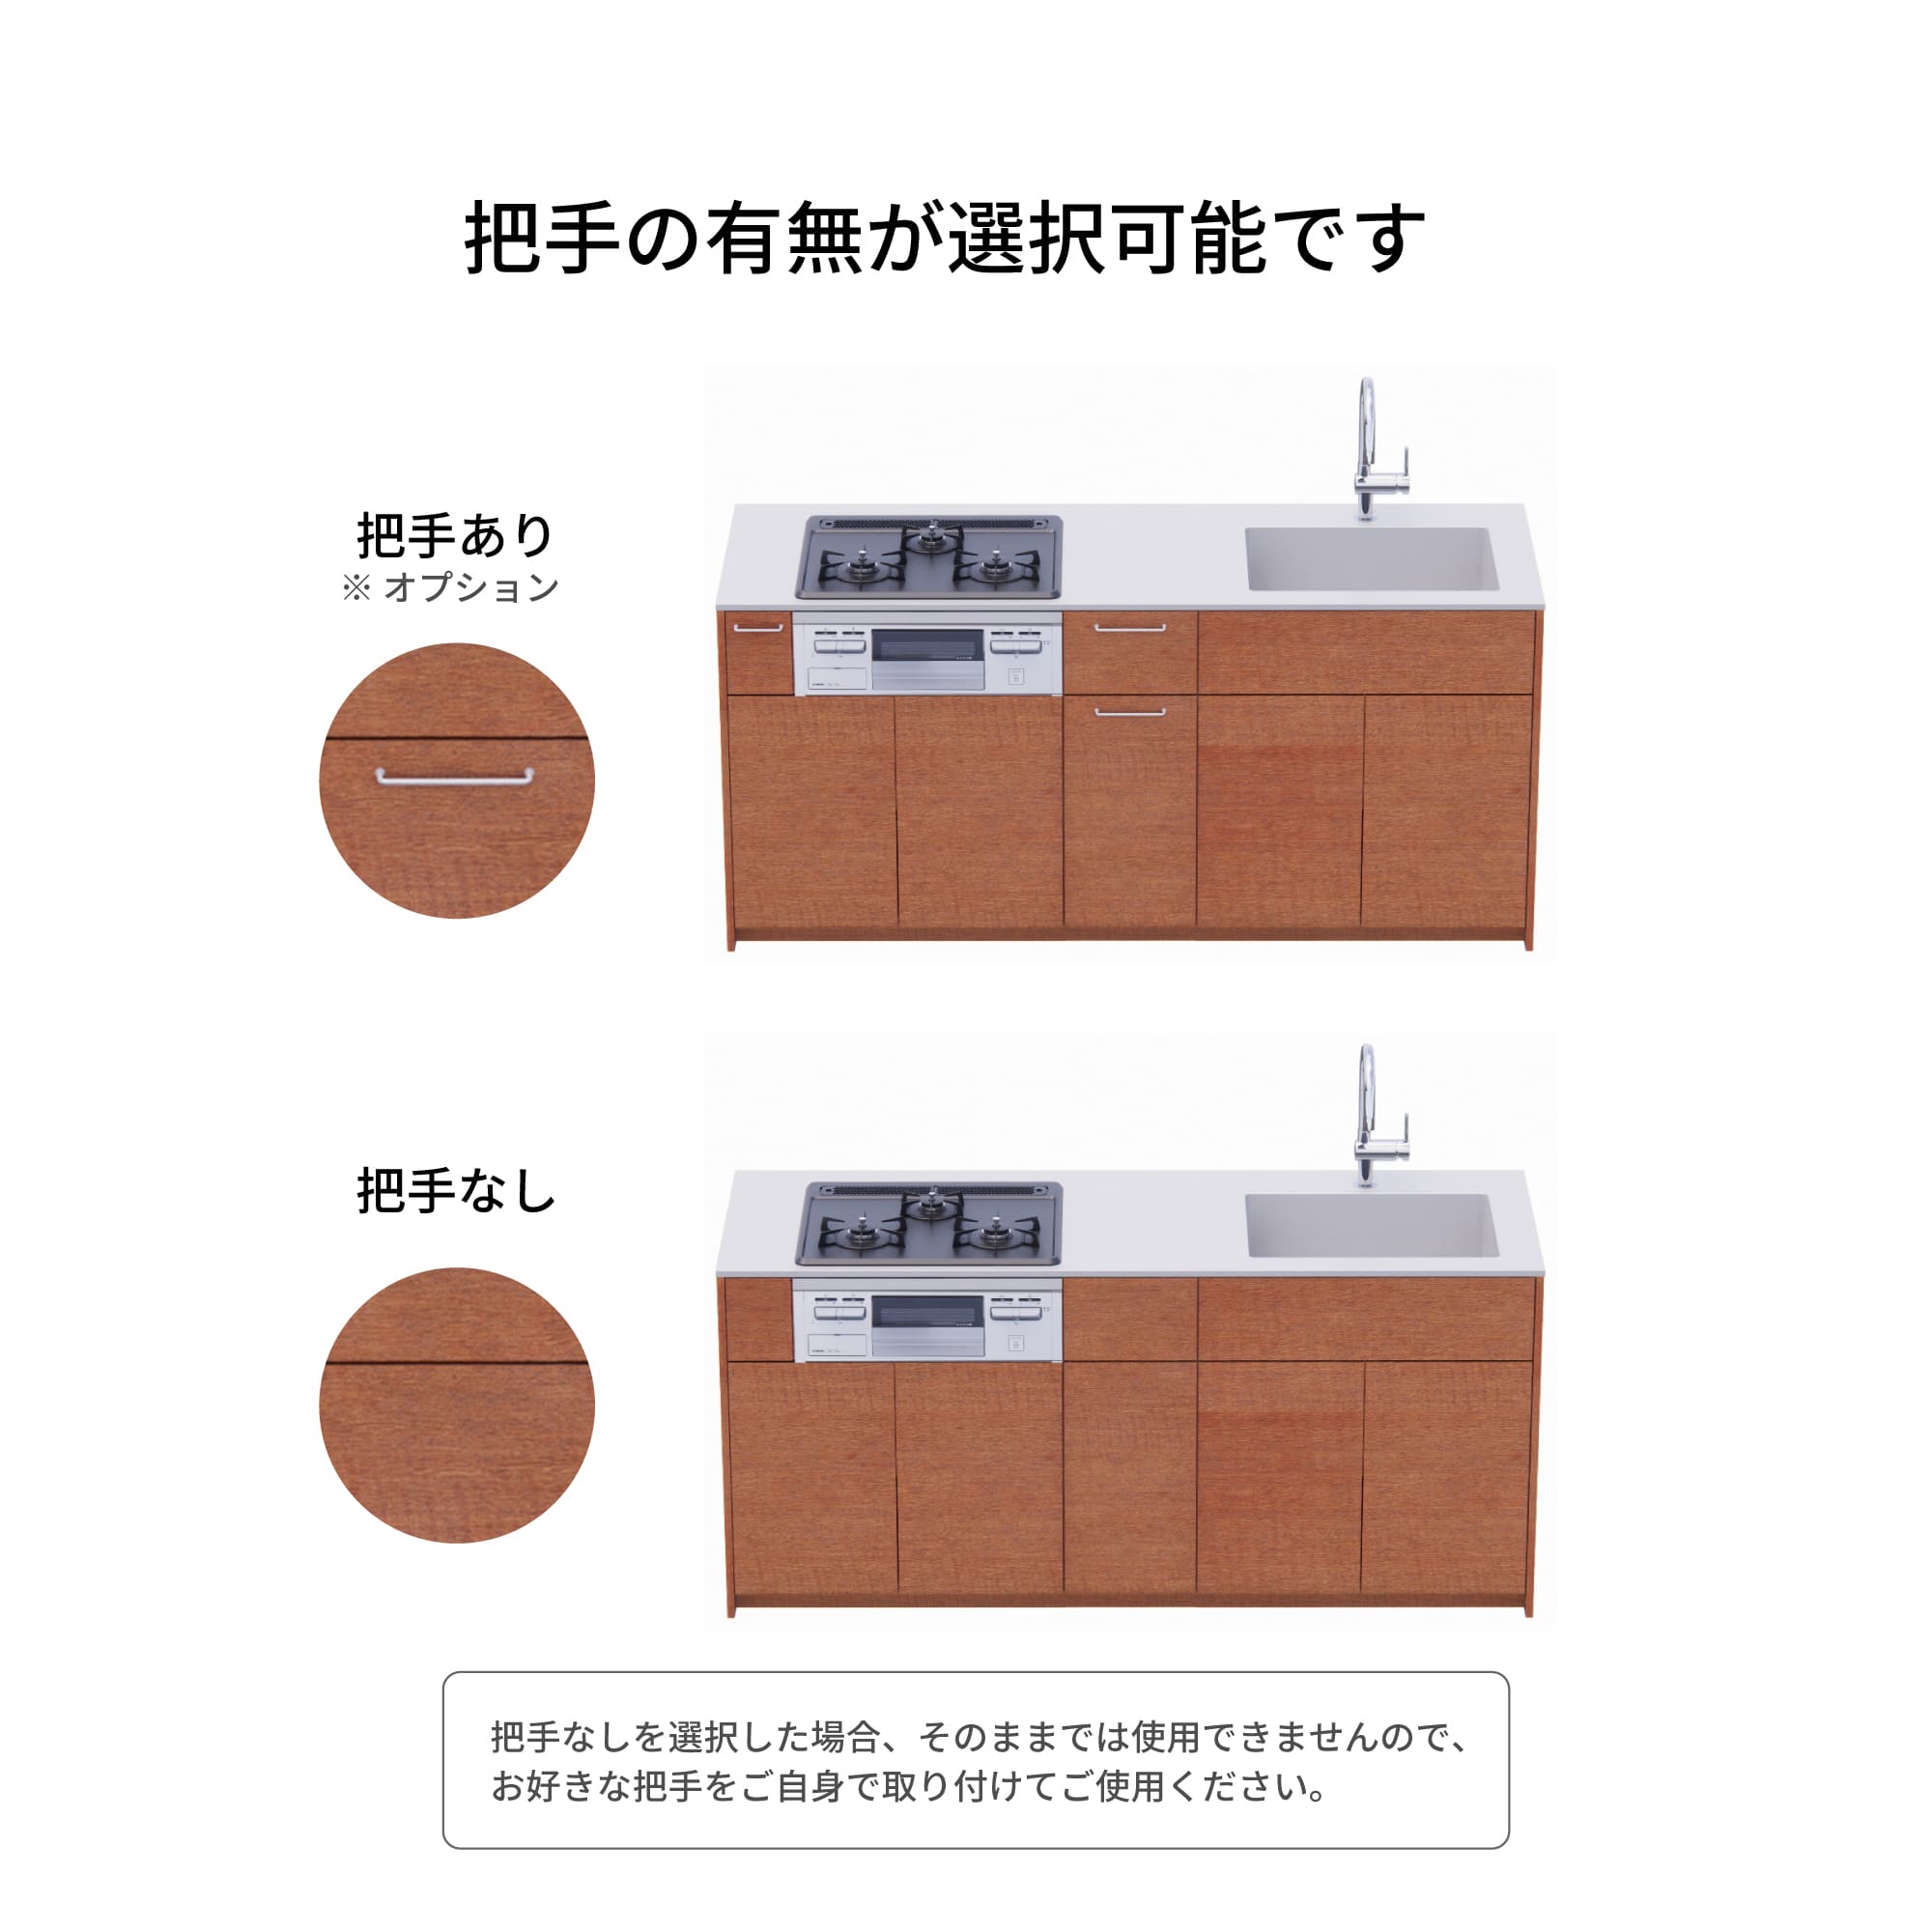 木製システムキッチン 対面型 W1990・コンロあり / オーブンなし / 食洗機あり KB-KC022-33-G183 把手の有無が選択可能です